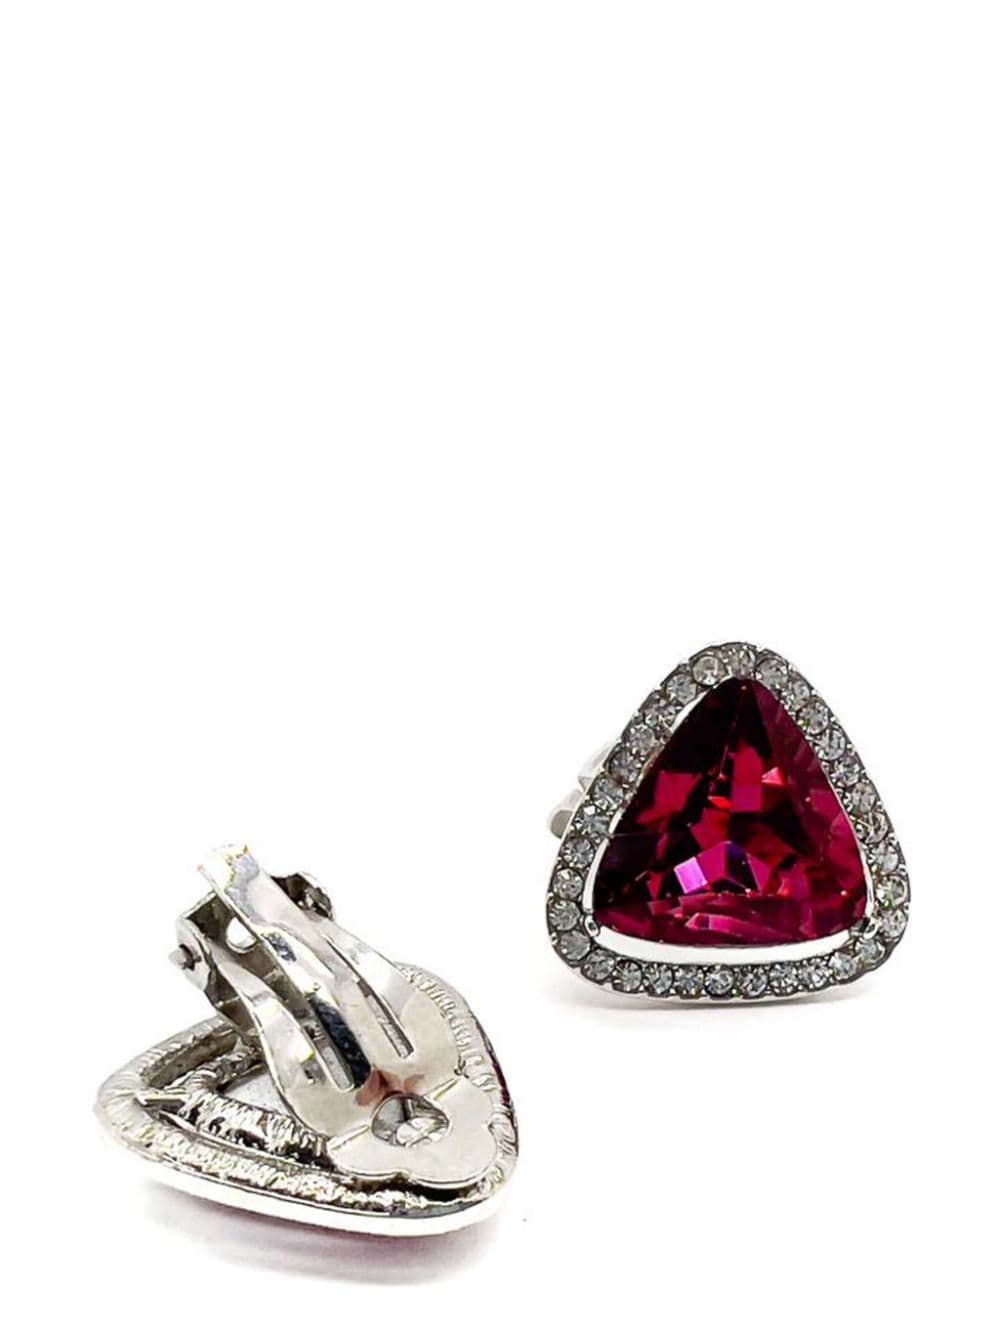 Jennifer Gibson Jewellery Vintage Pink Trillion Crystal Earrings 1970s - Roze